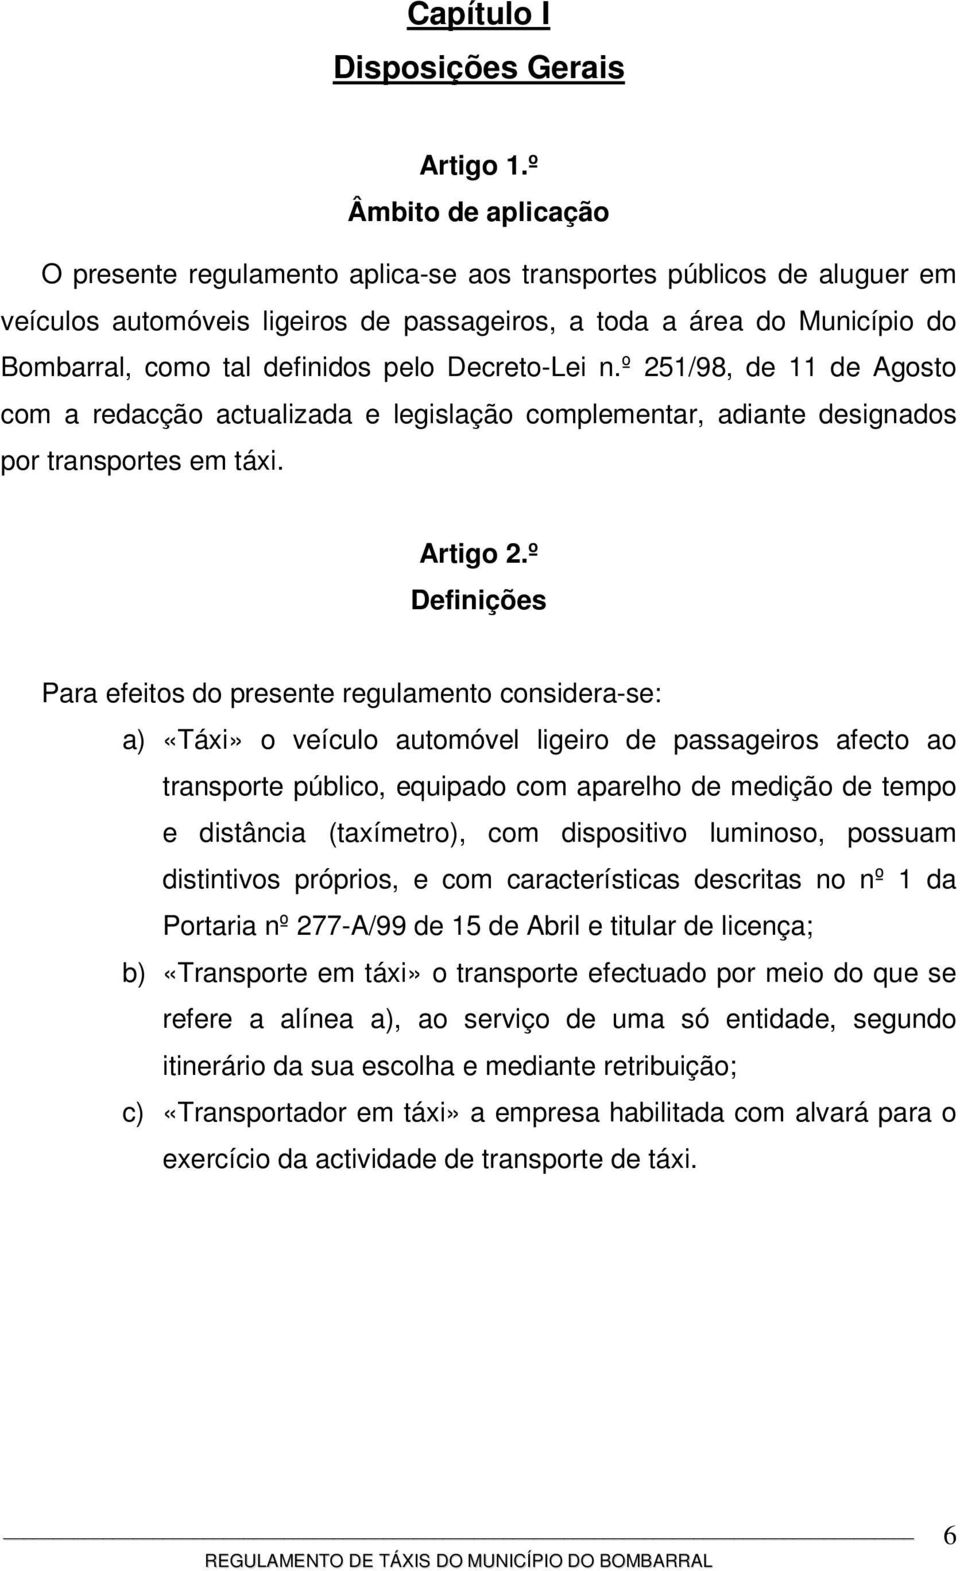 pelo Decreto-Lei n.º 251/98, de 11 de Agosto com a redacção actualizada e legislação complementar, adiante designados por transportes em táxi. Artigo 2.